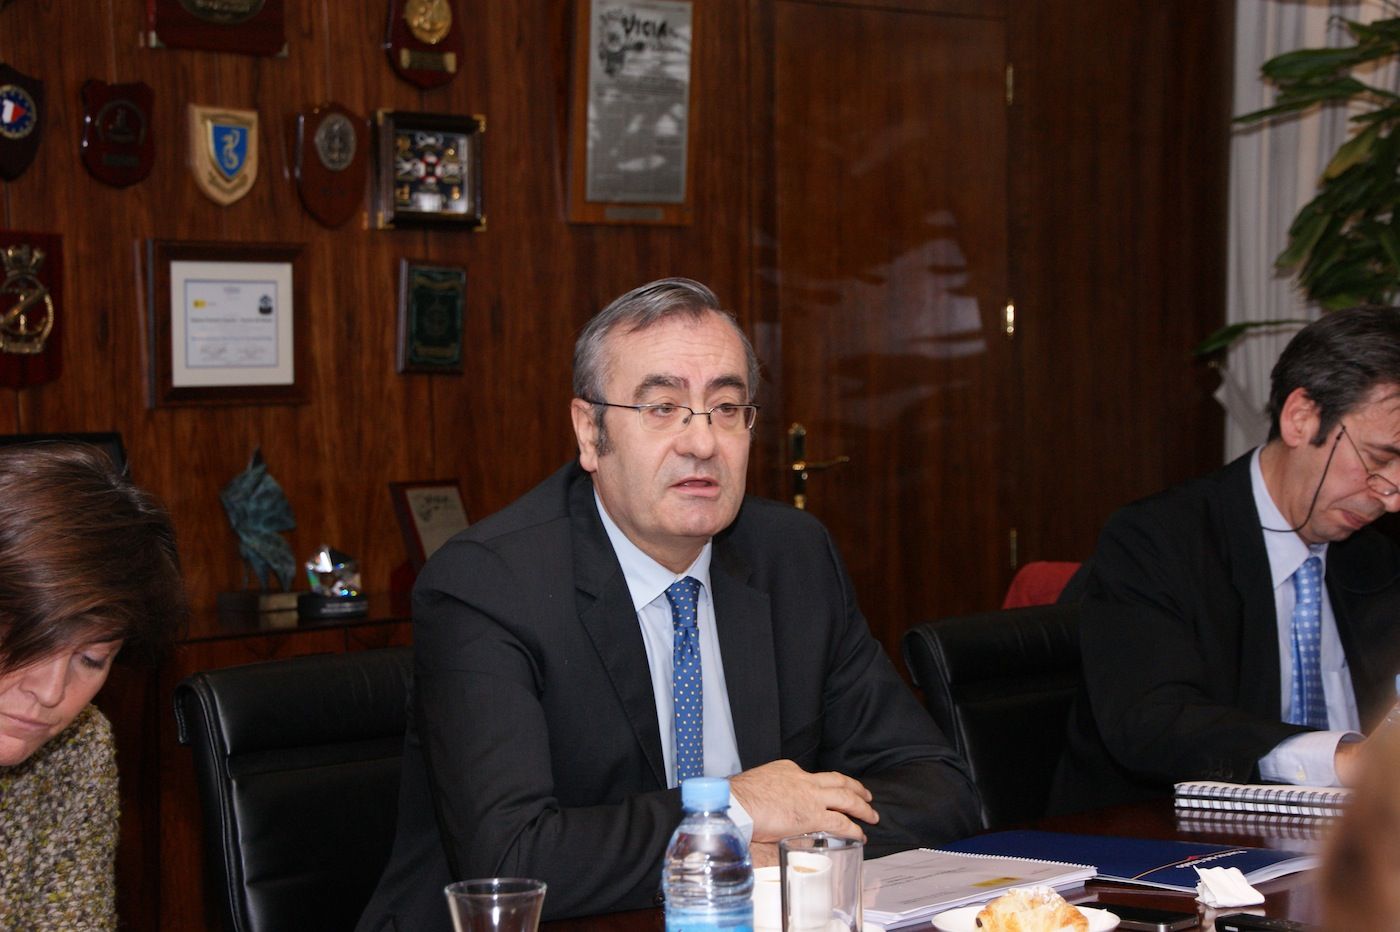 José Llorca presidente de Puertos del Estado analiza lo que ha sido el 2013 en el sector portuario español.